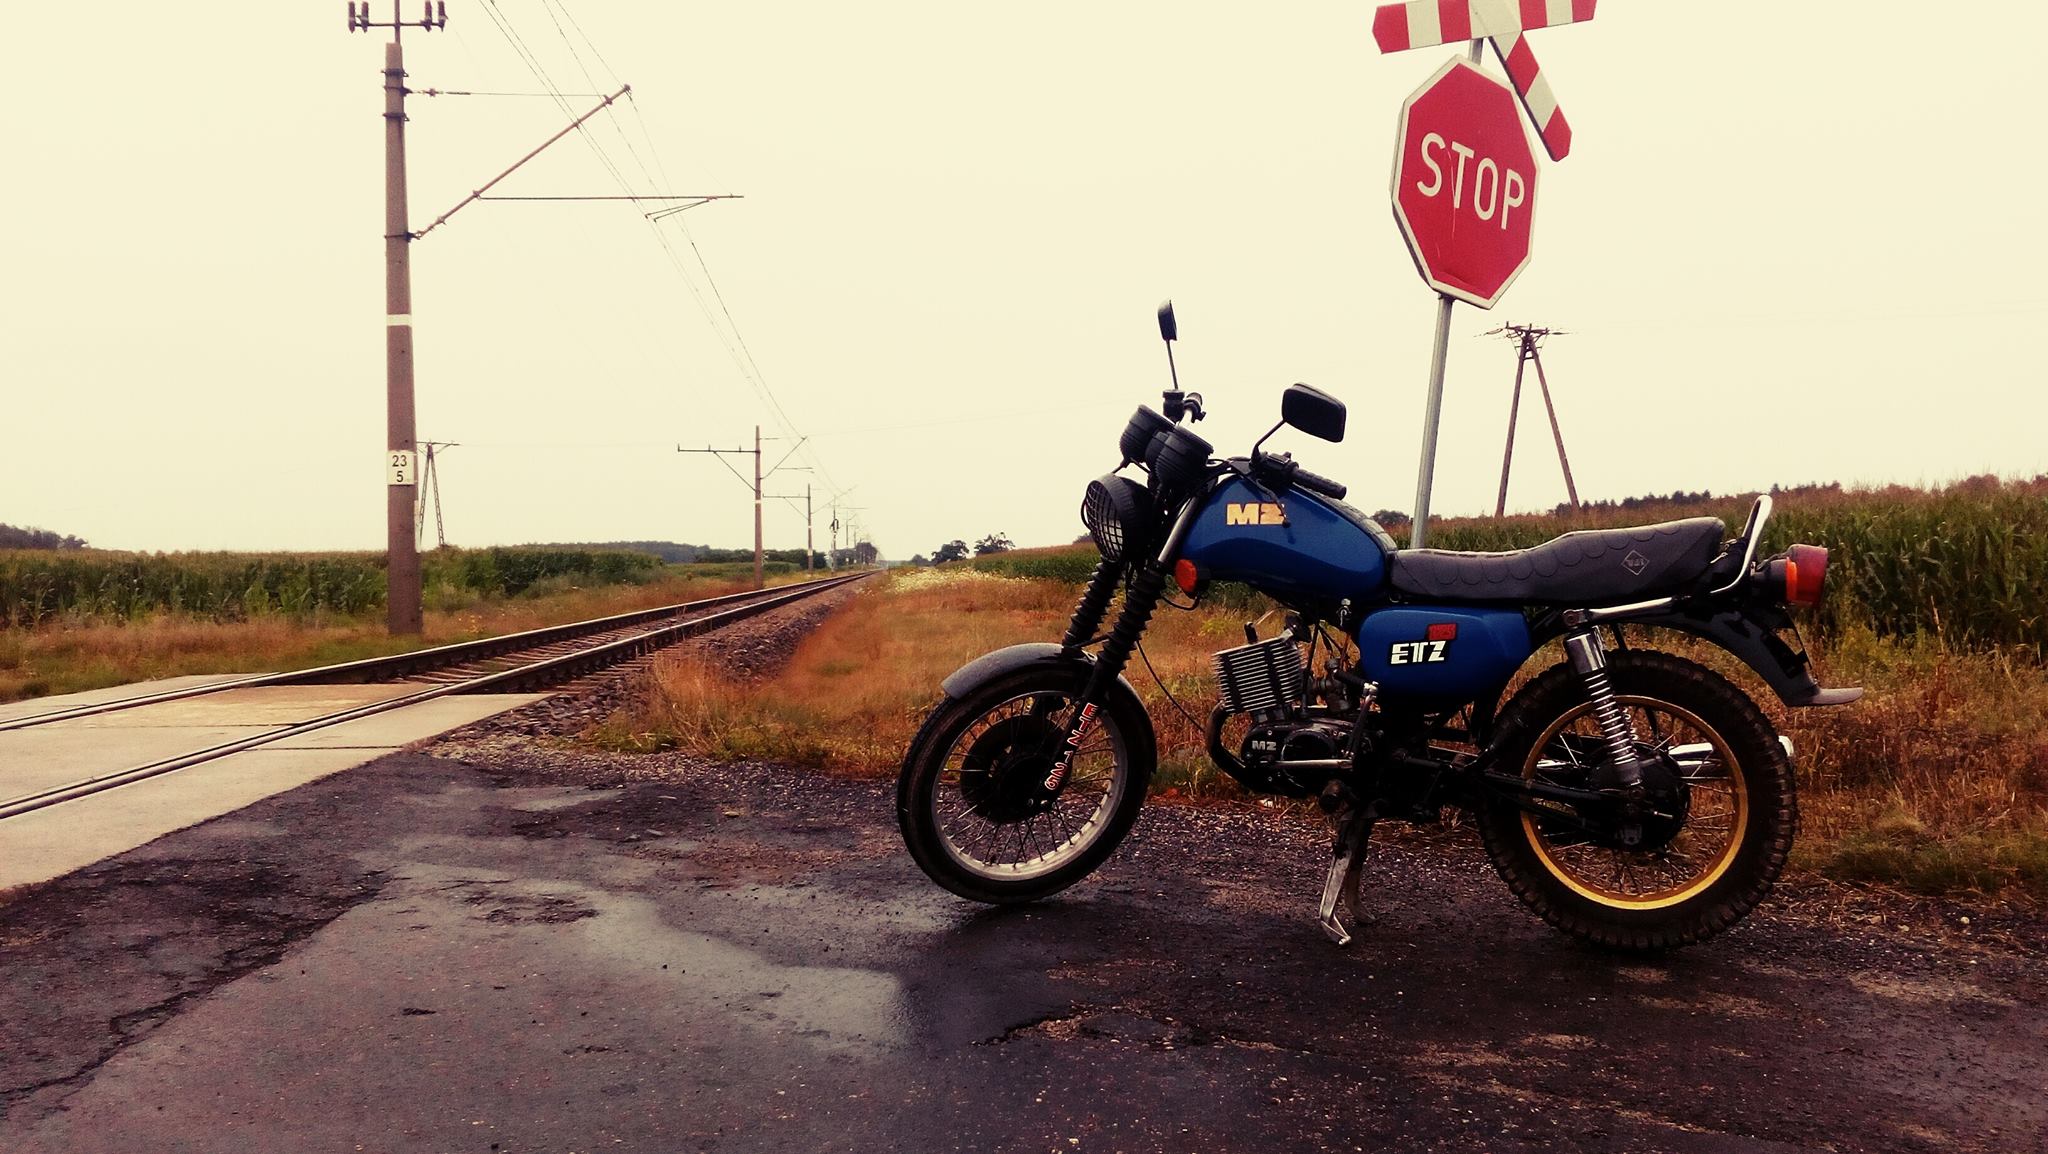 General 2048x1154 motorcycle rain railway wet street stop sign overcast